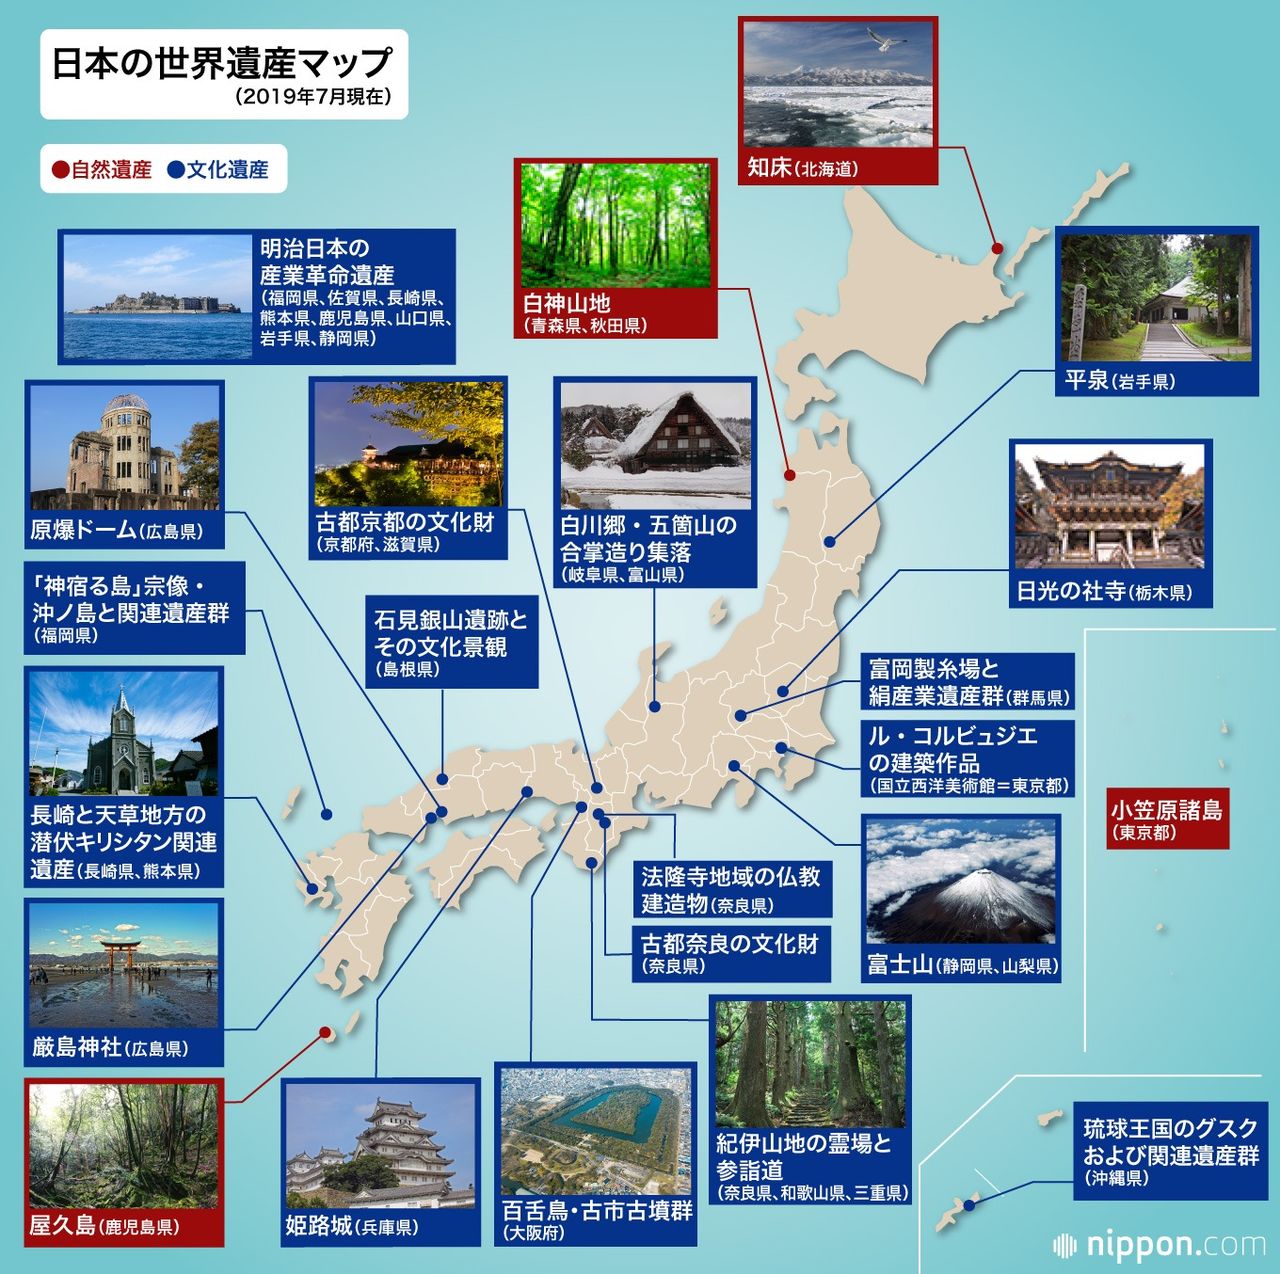 百舌鳥 古市古墳群の登録決定 国内23件目の世界遺産 Nippon Com